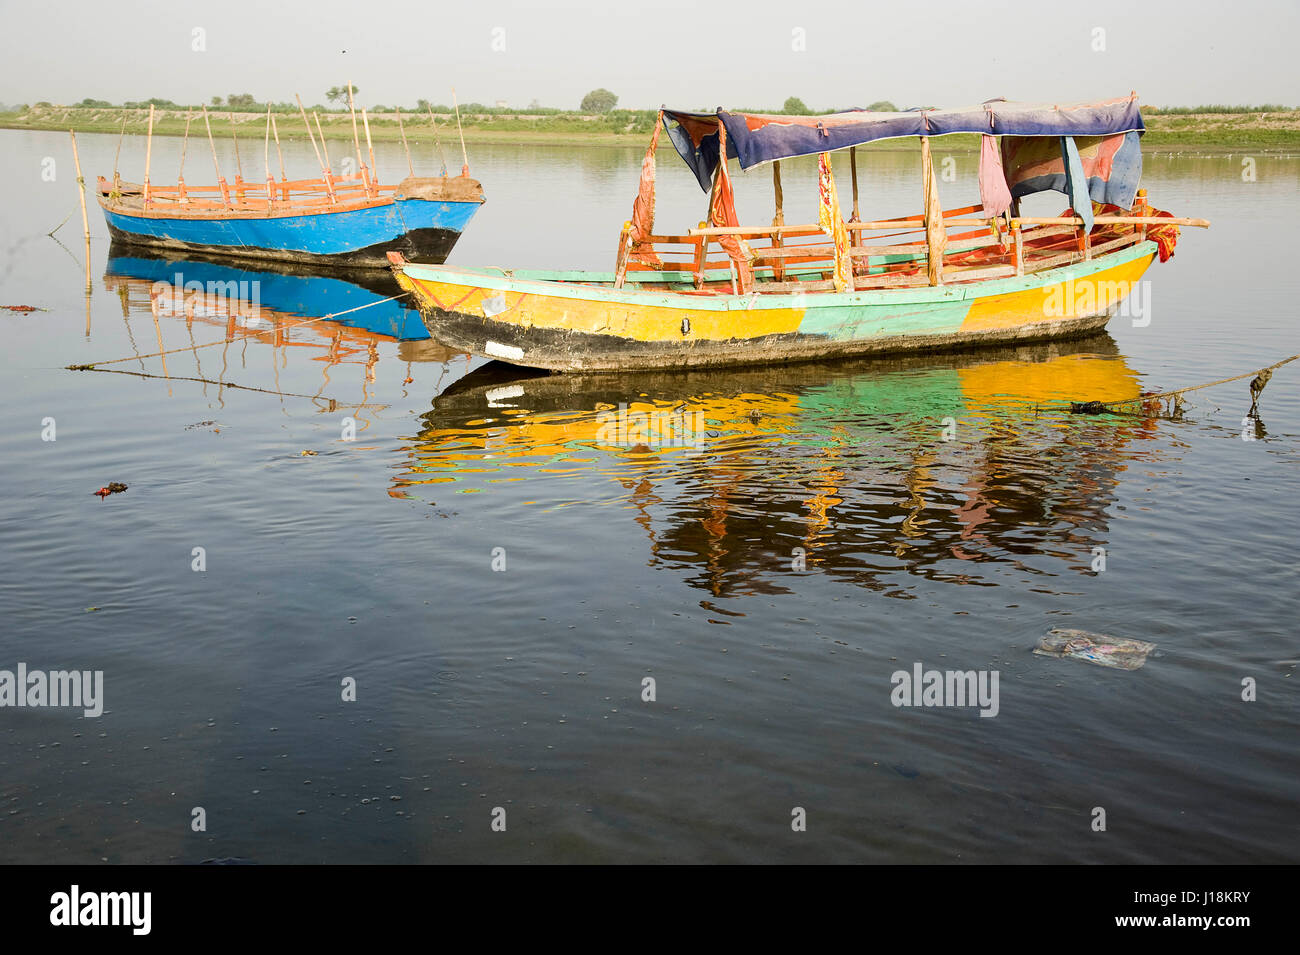 Boat in river, keshi ghat, vrindavan, uttar pradesh, india, asia Stock Photo